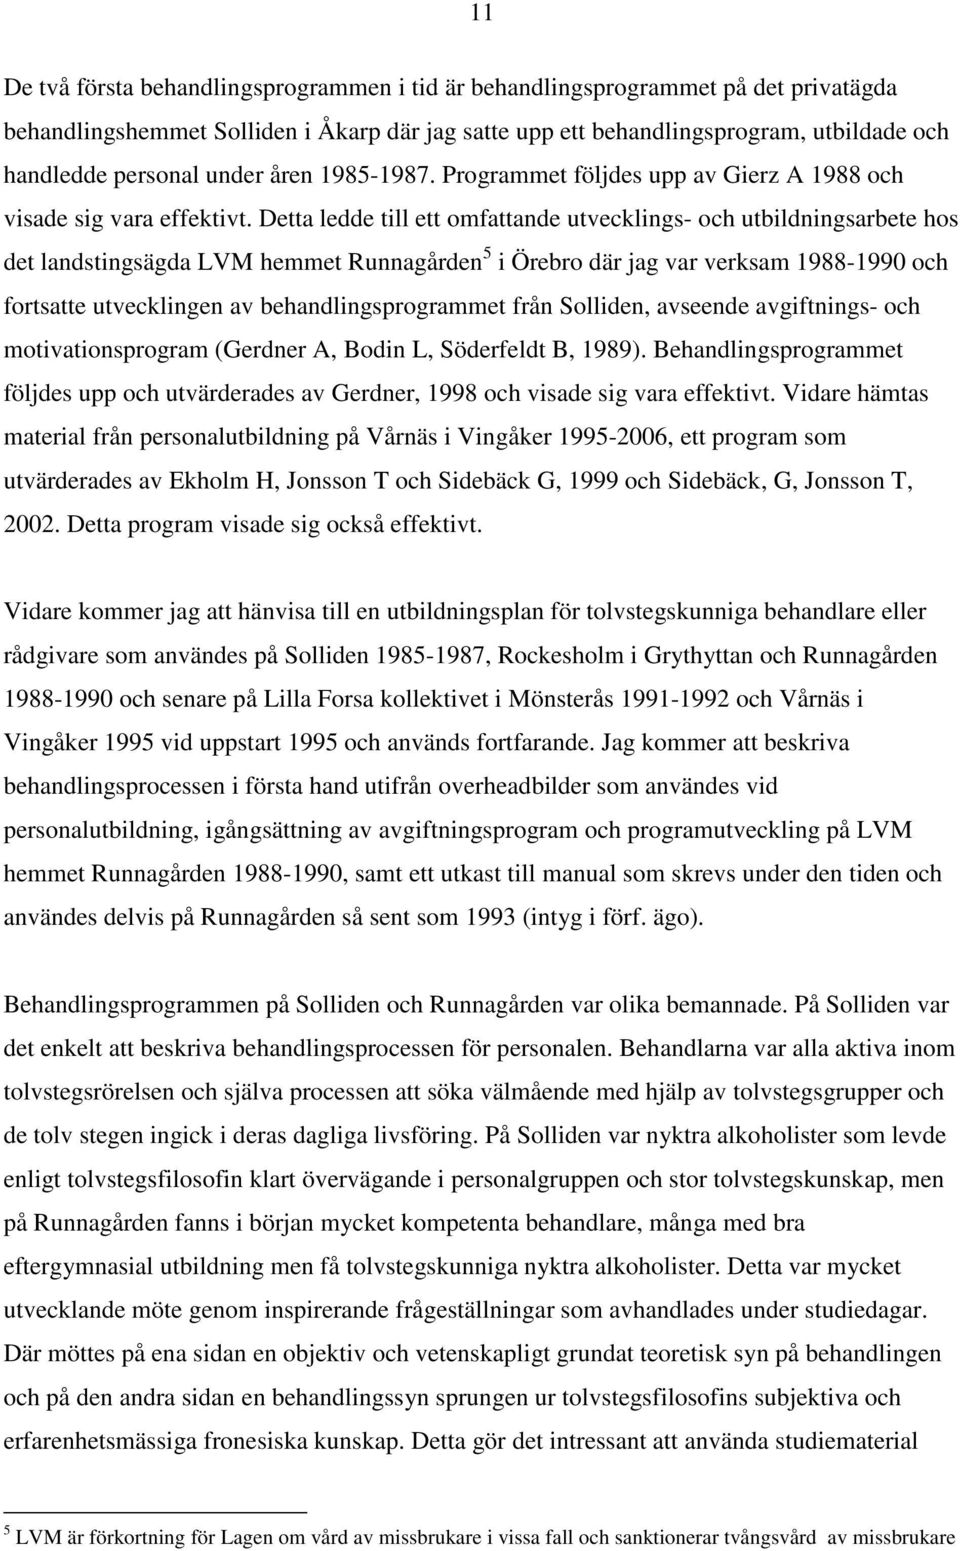 Detta ledde till ett omfattande utvecklings- och utbildningsarbete hos det landstingsägda LVM hemmet Runnagården 5 i Örebro där jag var verksam 1988-1990 och fortsatte utvecklingen av